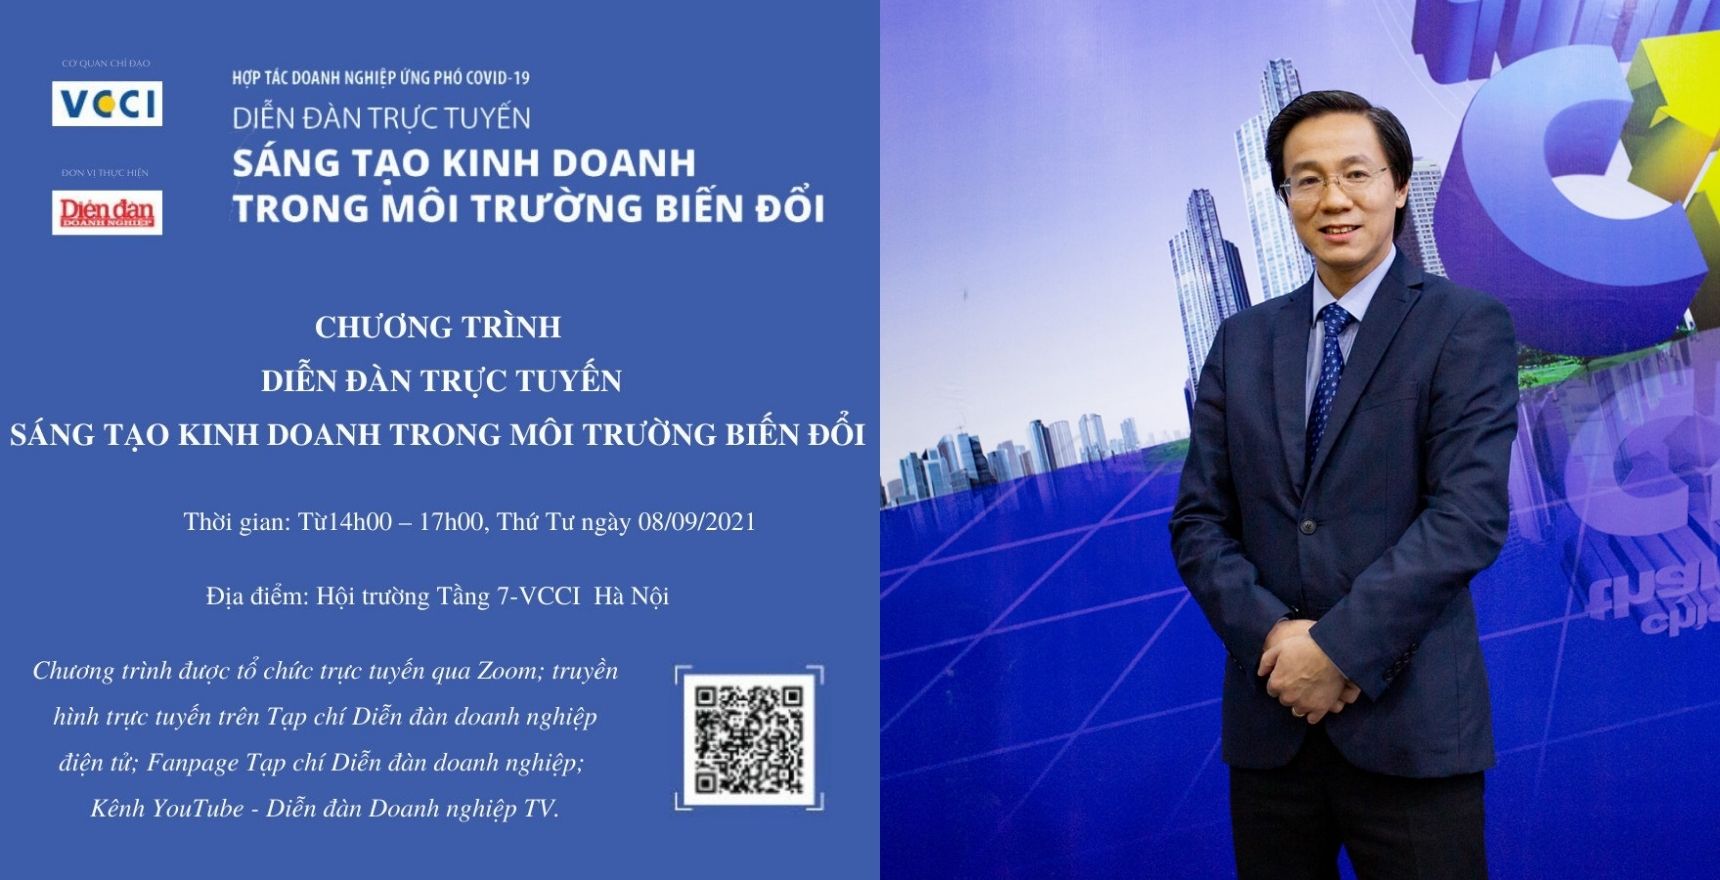 Diễn đàn trực tuyến: Sáng tạo kinh doanh trong môi trường biến đổi - Những chia sẻ của Ông Đinh Hồng Kỳ